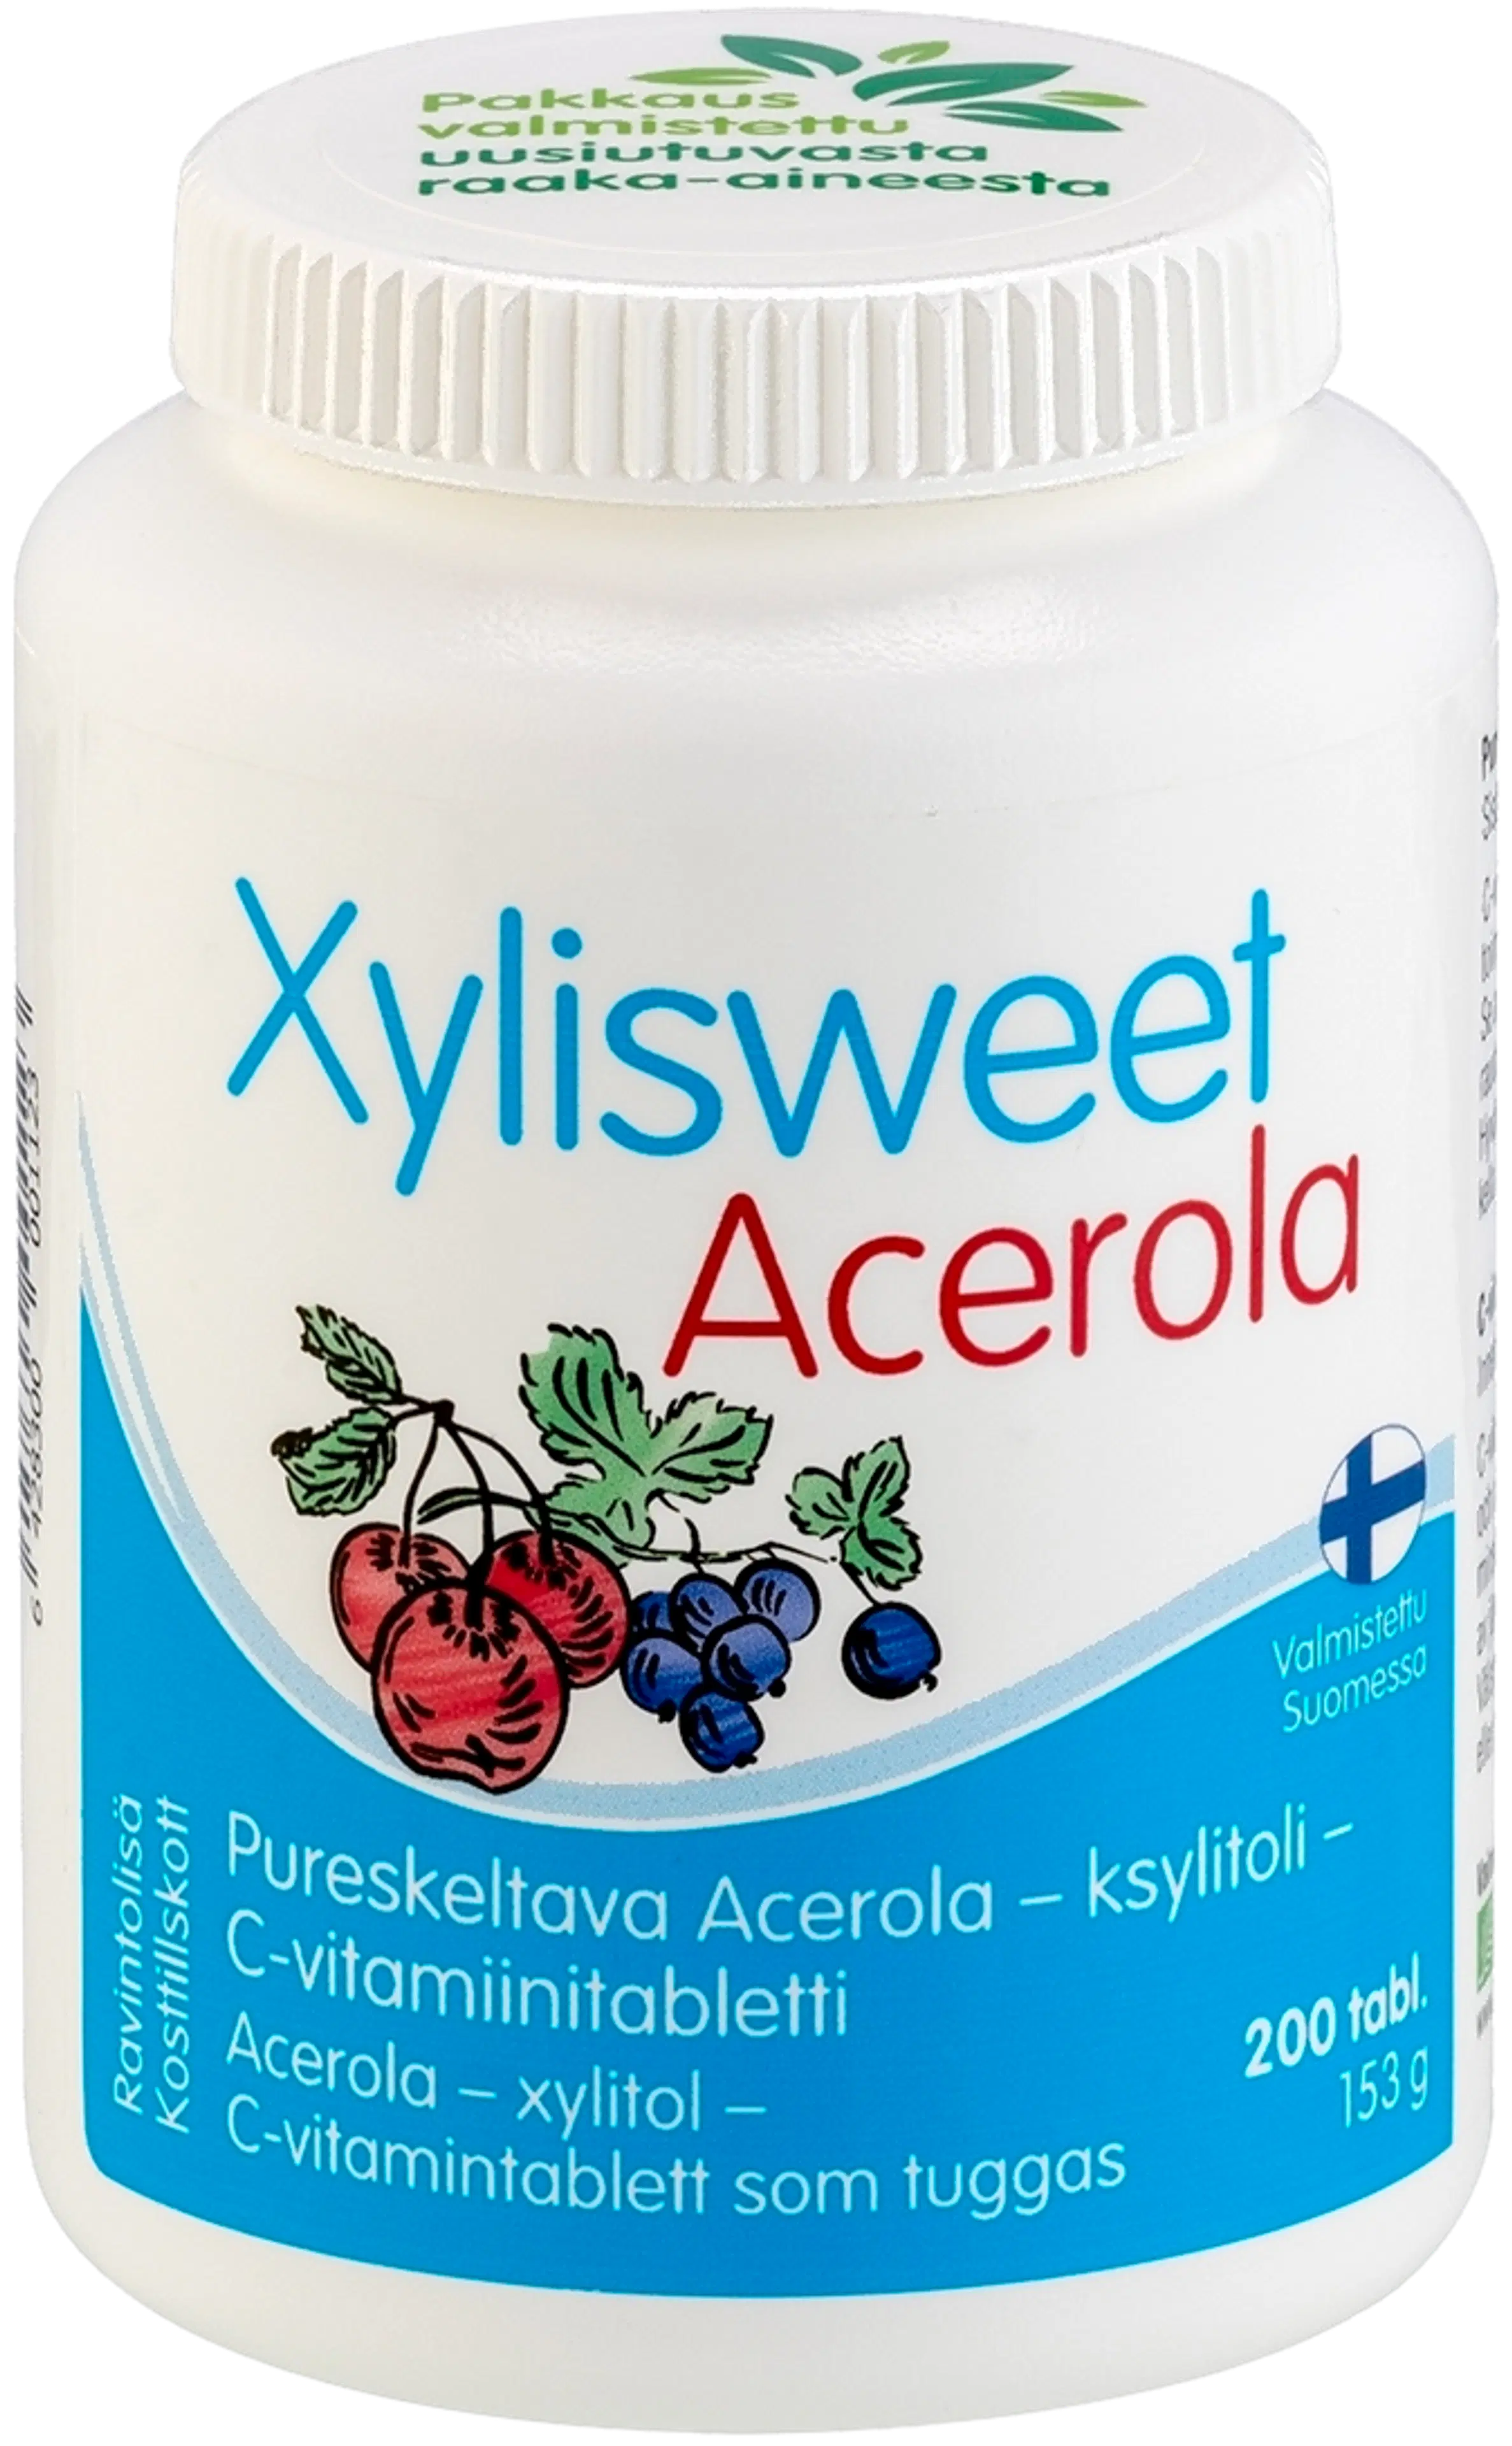 Xylisweet Acerola pureskeltava acerola-ksylitoli-C-vitamiinitabletti 200 tabl